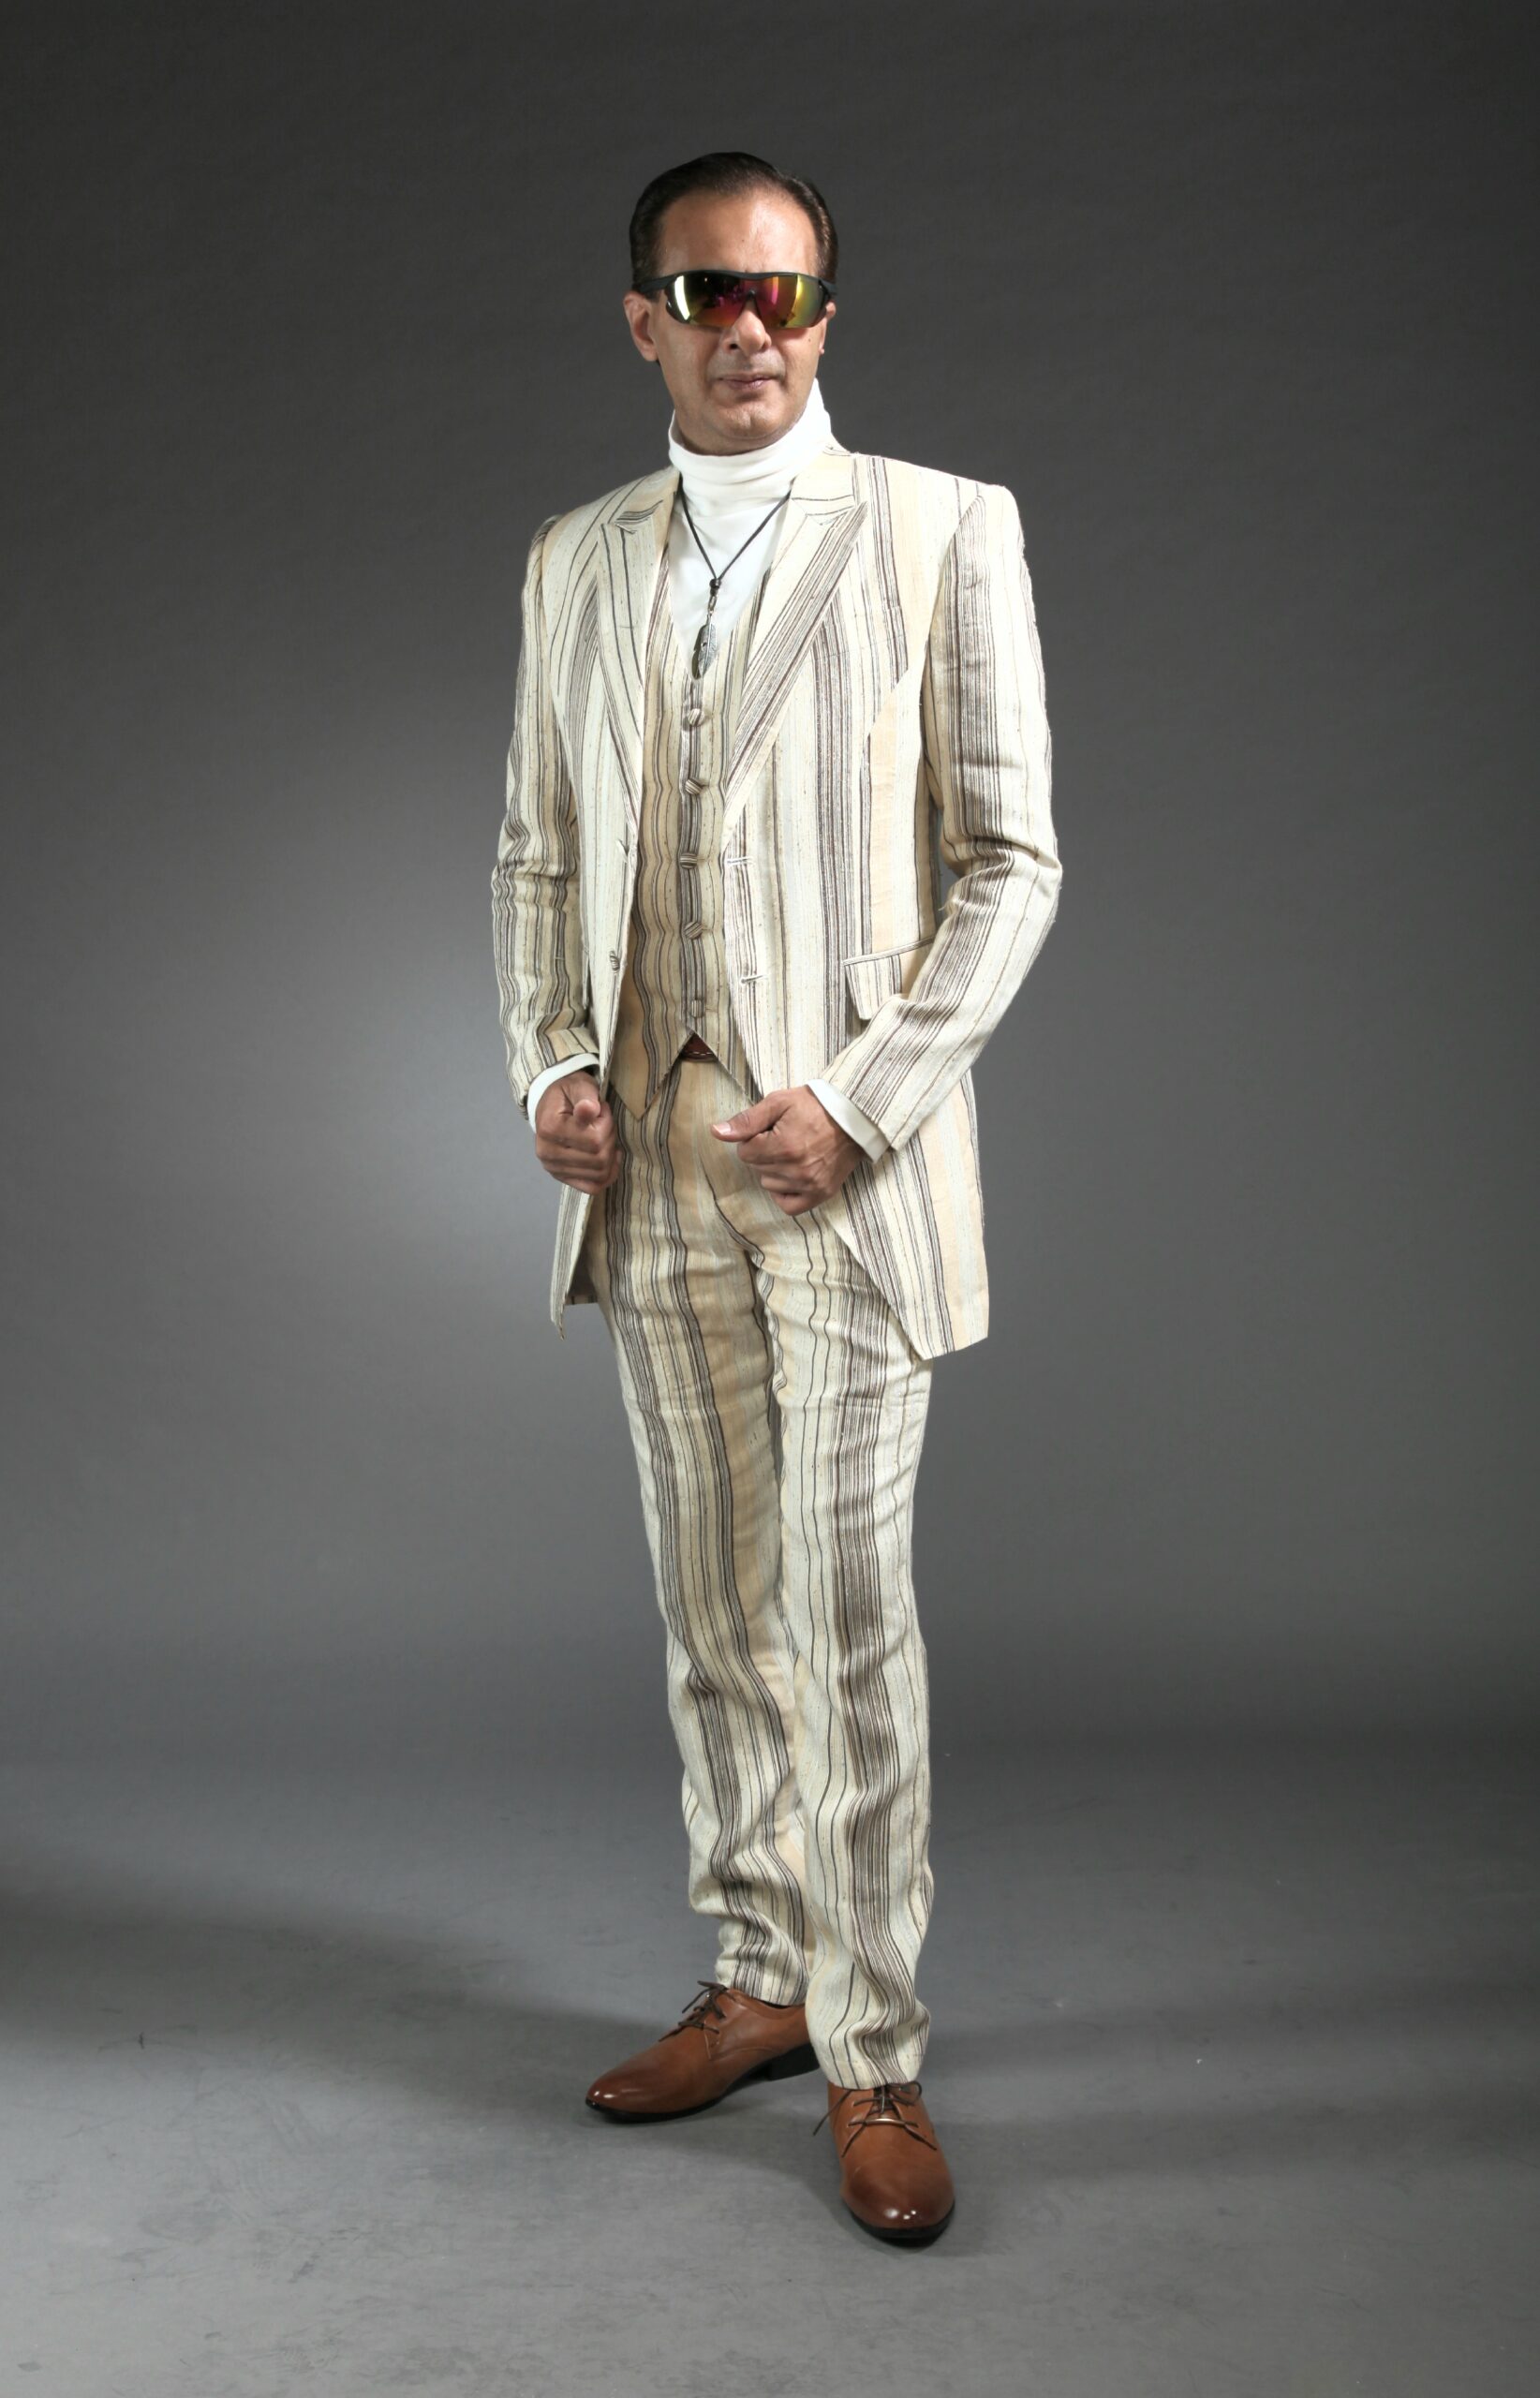 Mst 5006 03 Rent Rental Hire Tuxedo Suit Black Tie Suit Designer Suits Shop Tailor